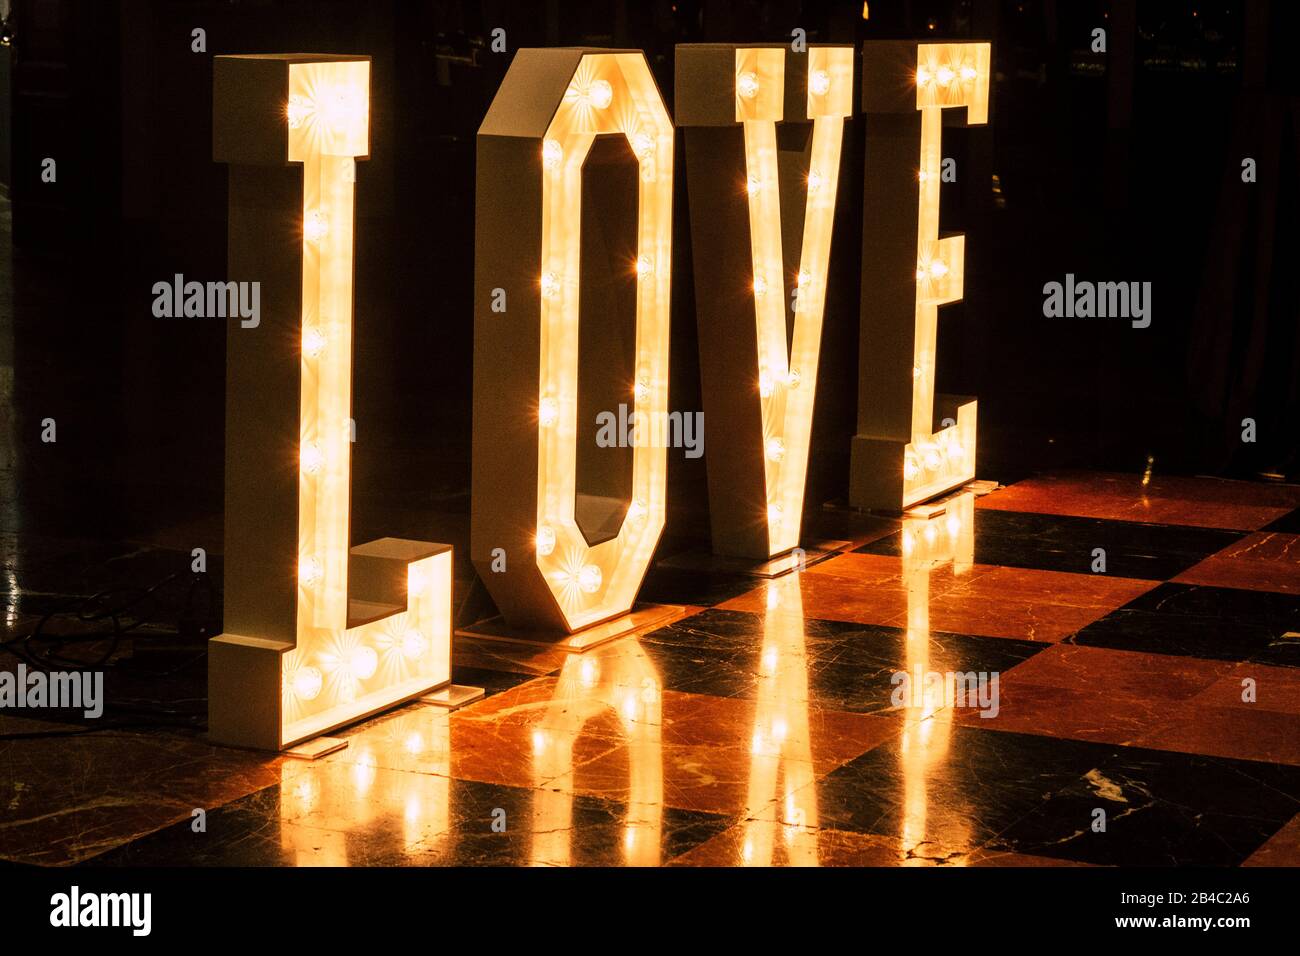 Insign mit schönen Buchstaben mit Licht des Wortes Liebe - Hochzeit und foreve Konzept - Nachtleben Tanz Raumhintergrund Stockfoto